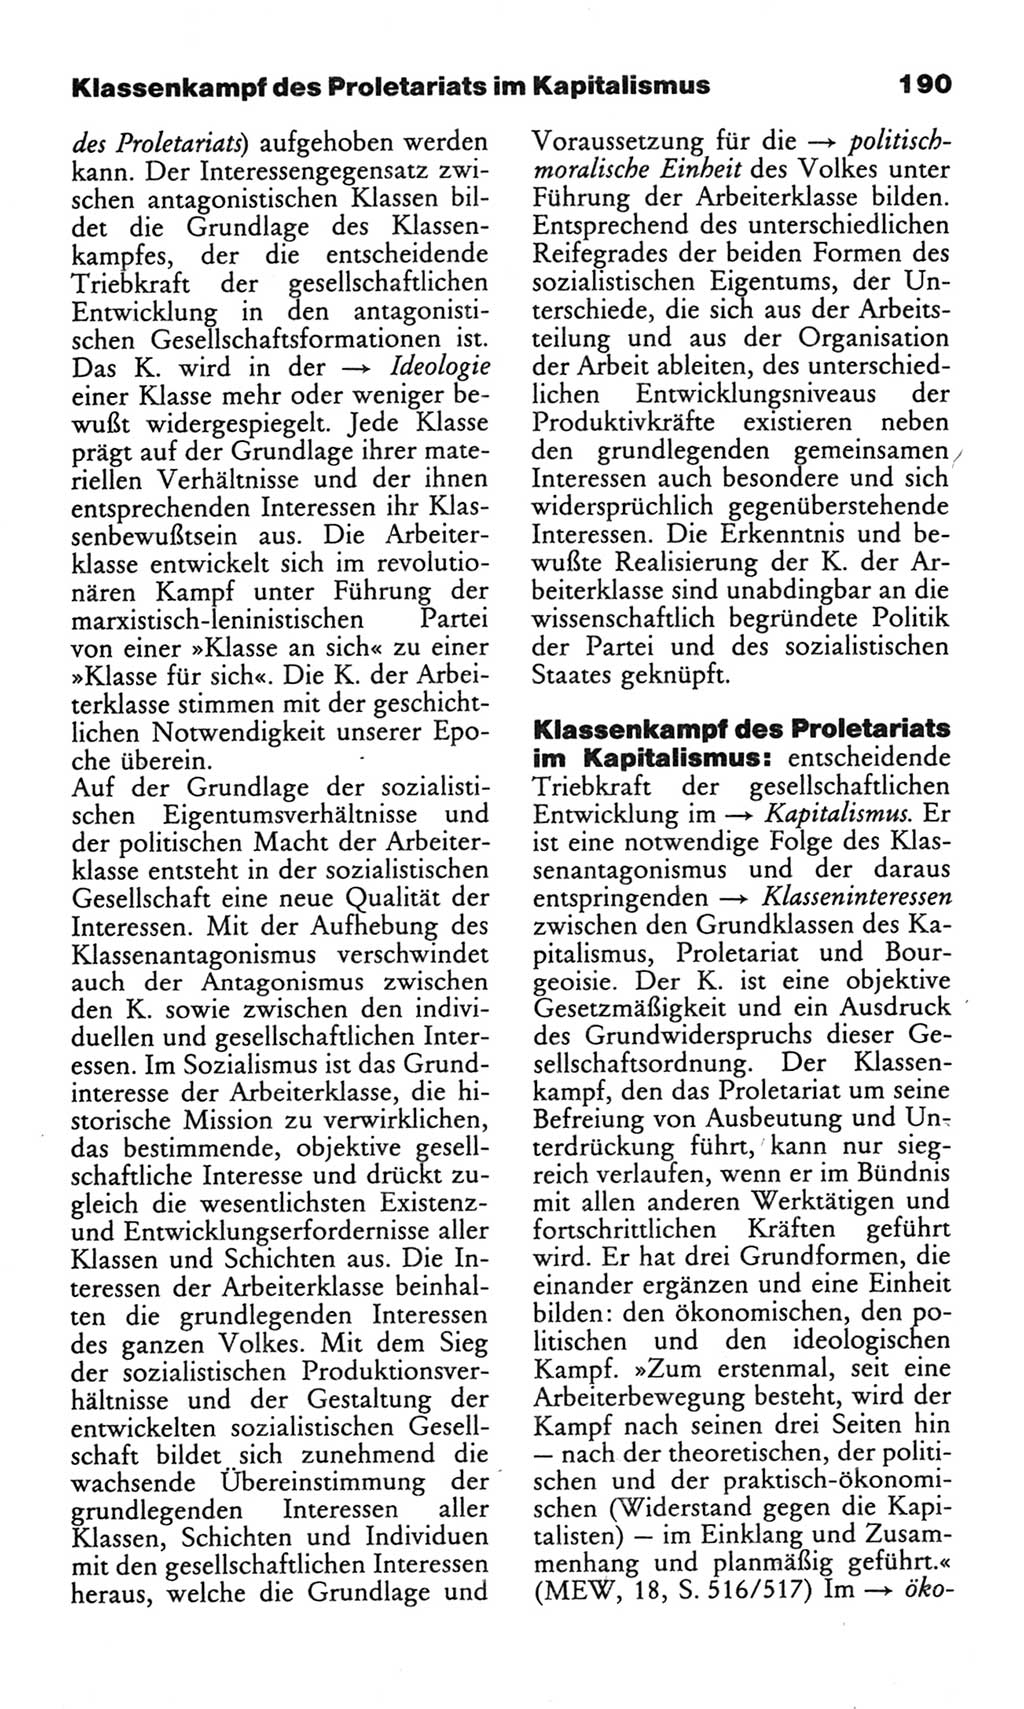 Wörterbuch des wissenschaftlichen Kommunismus [Deutsche Demokratische Republik (DDR)] 1982, Seite 190 (Wb. wiss. Komm. DDR 1982, S. 190)